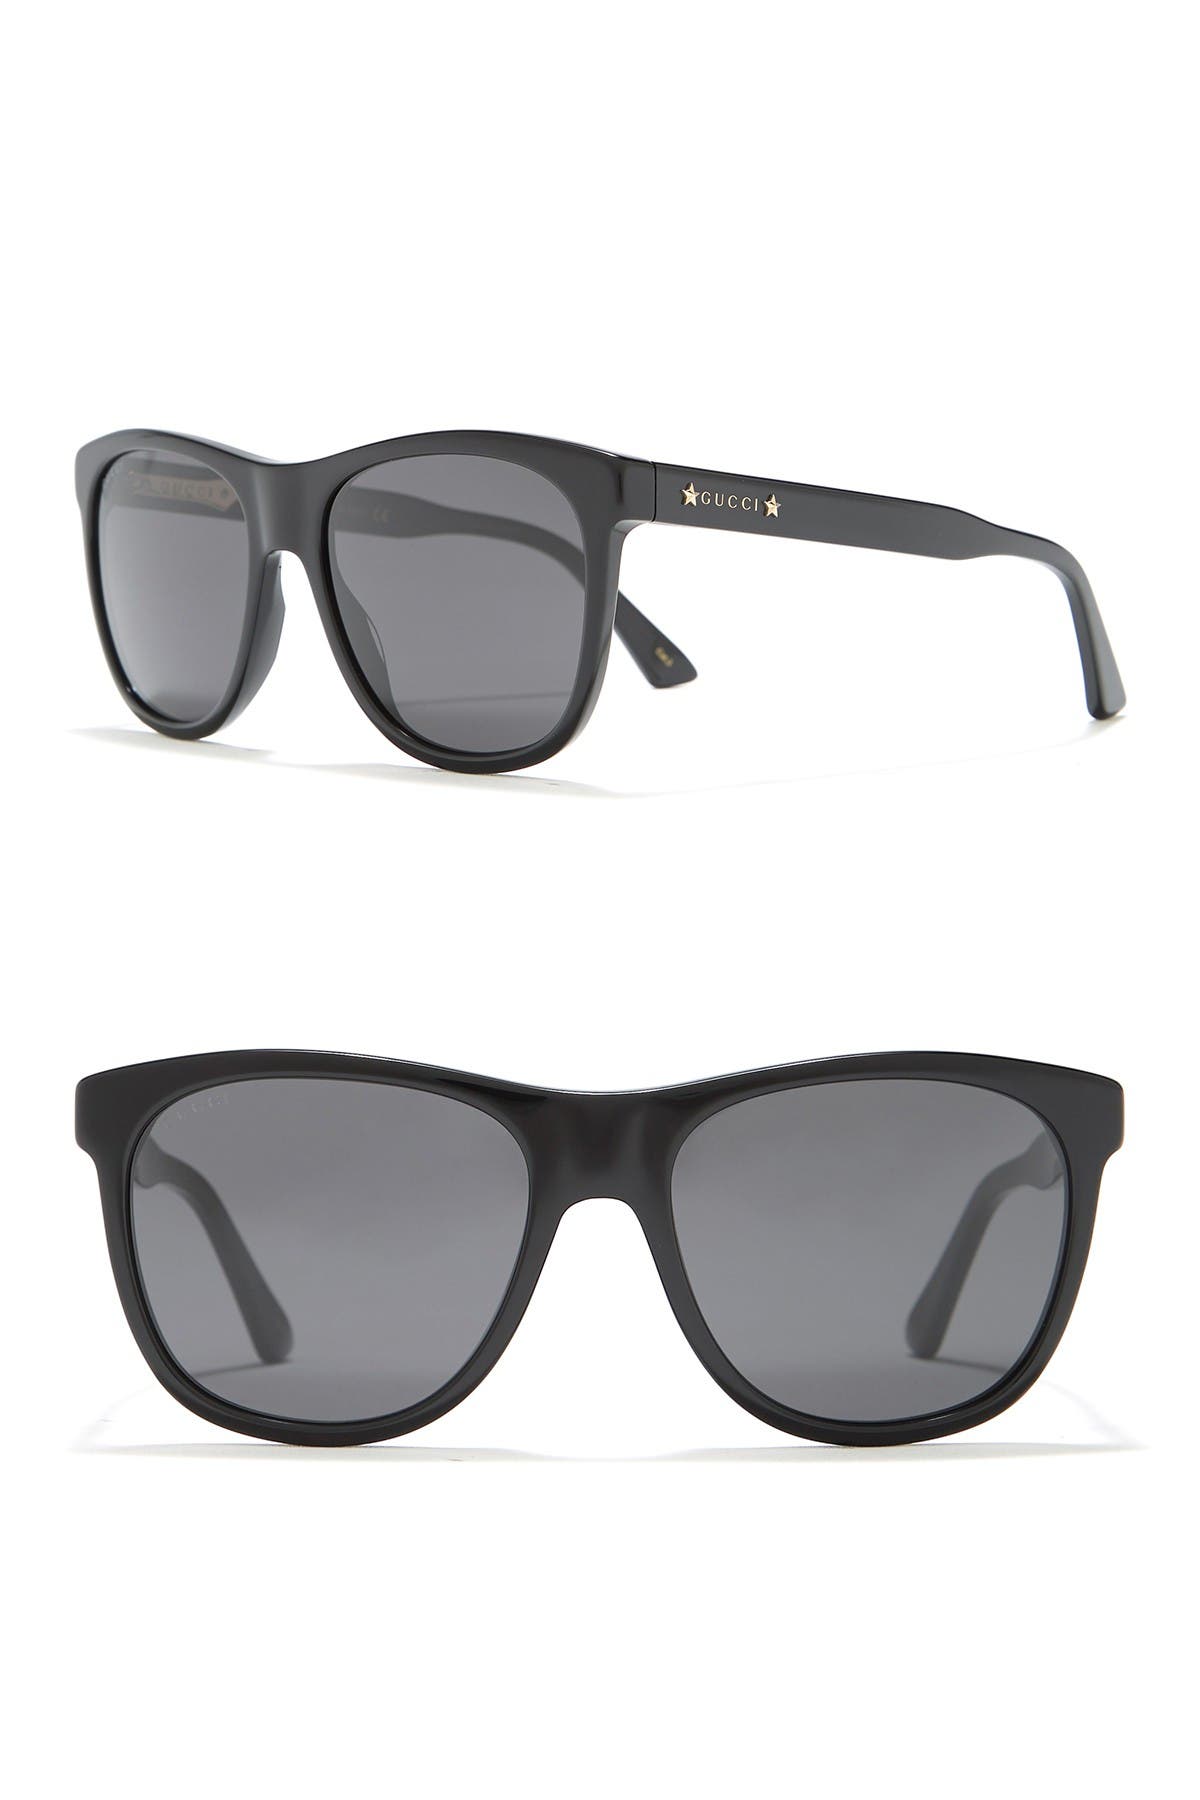 GUCCI | 55mm Square Sunglasses 